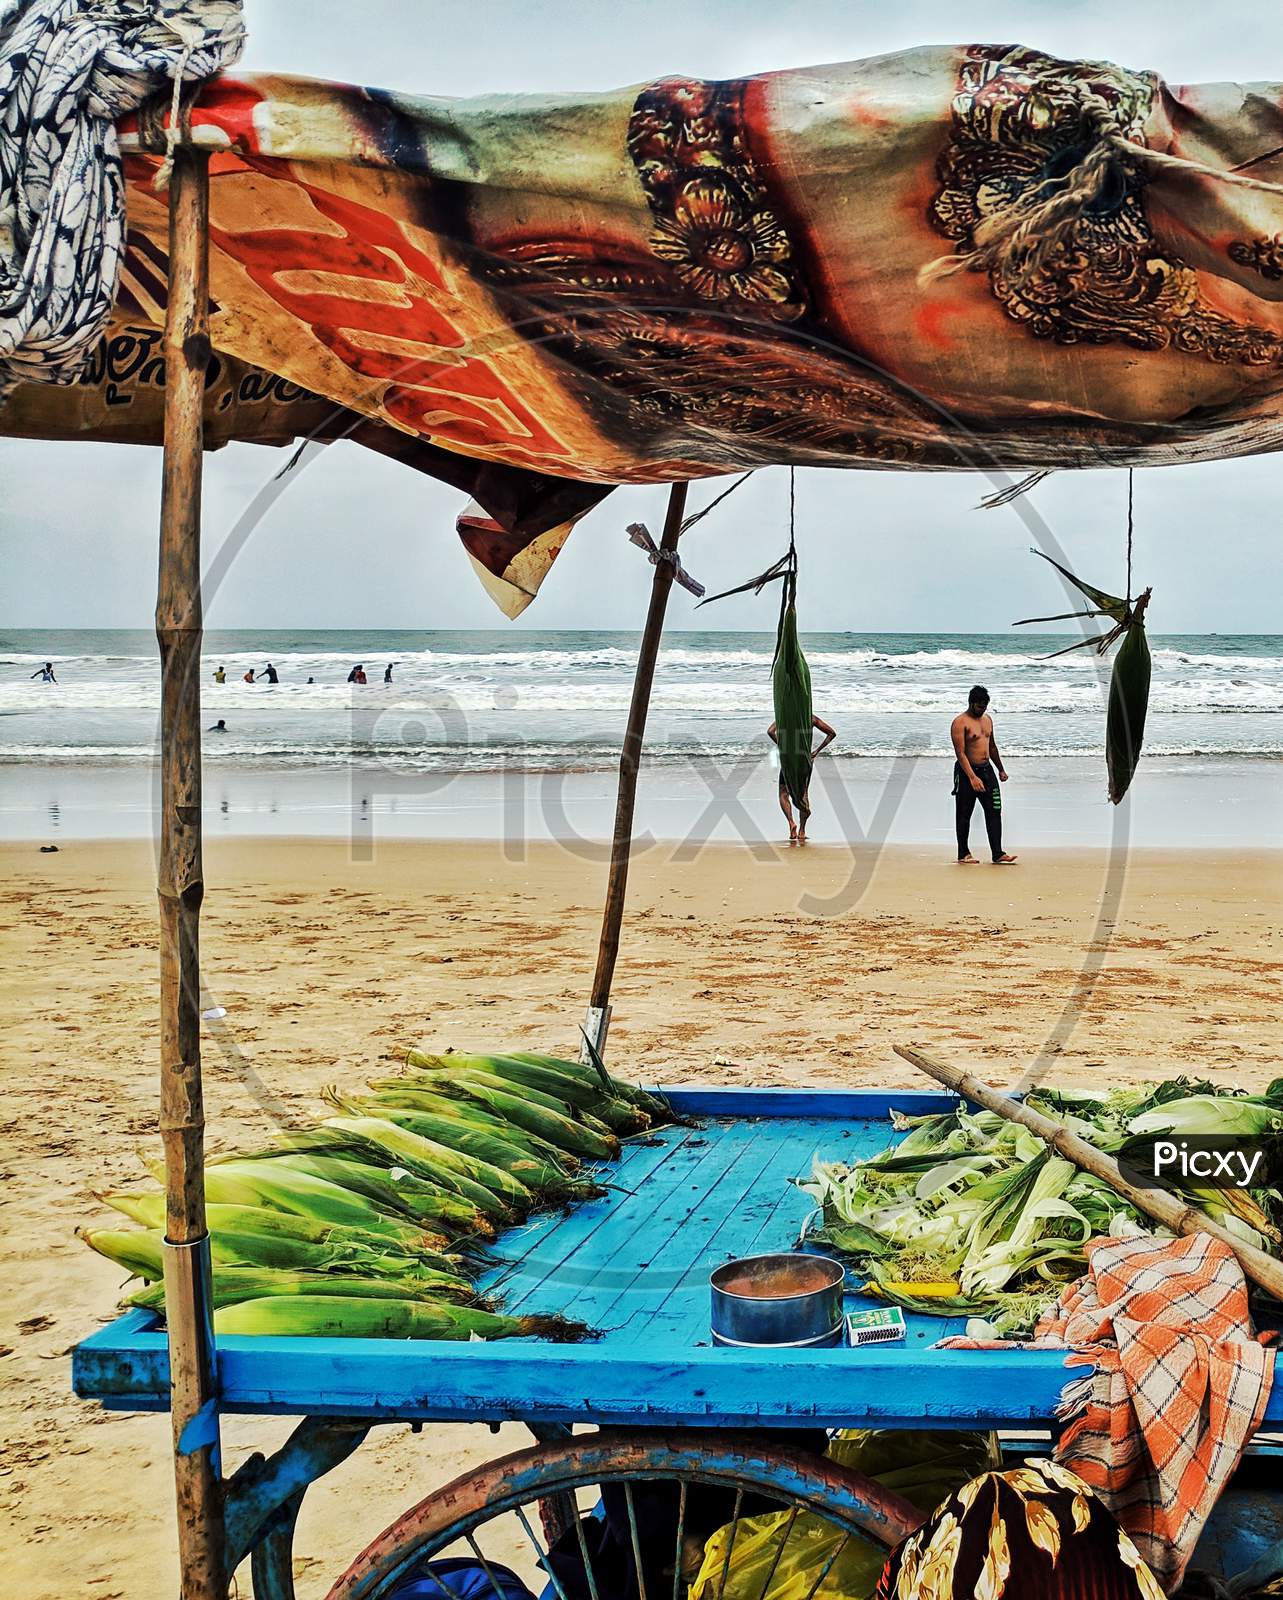 Corn Vendor Stall At a Beach